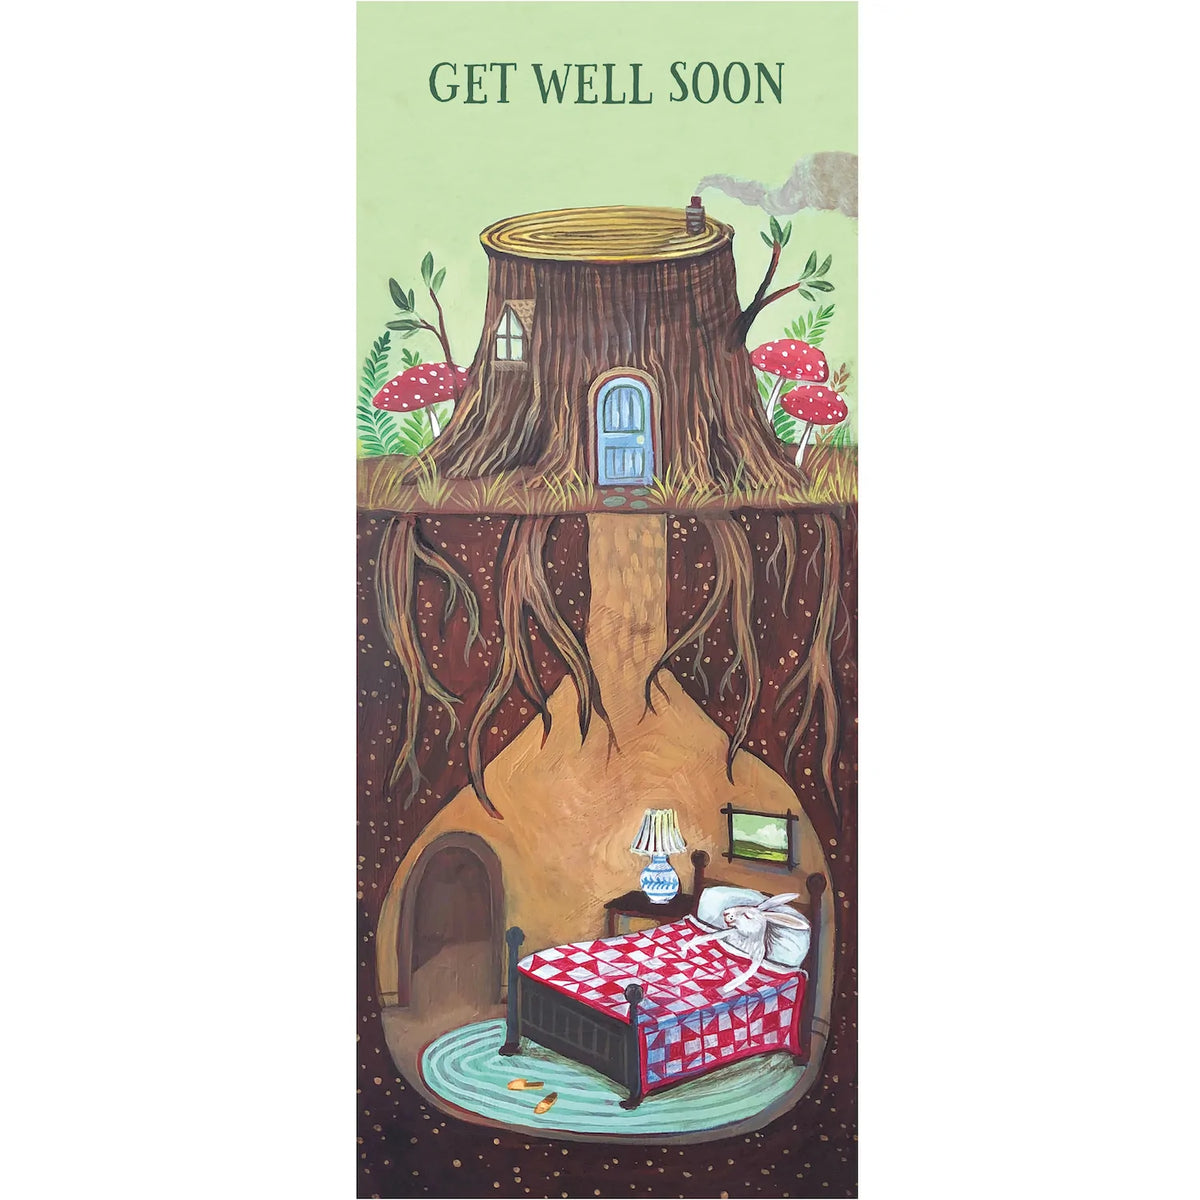 Get Well Soon Bunny Card